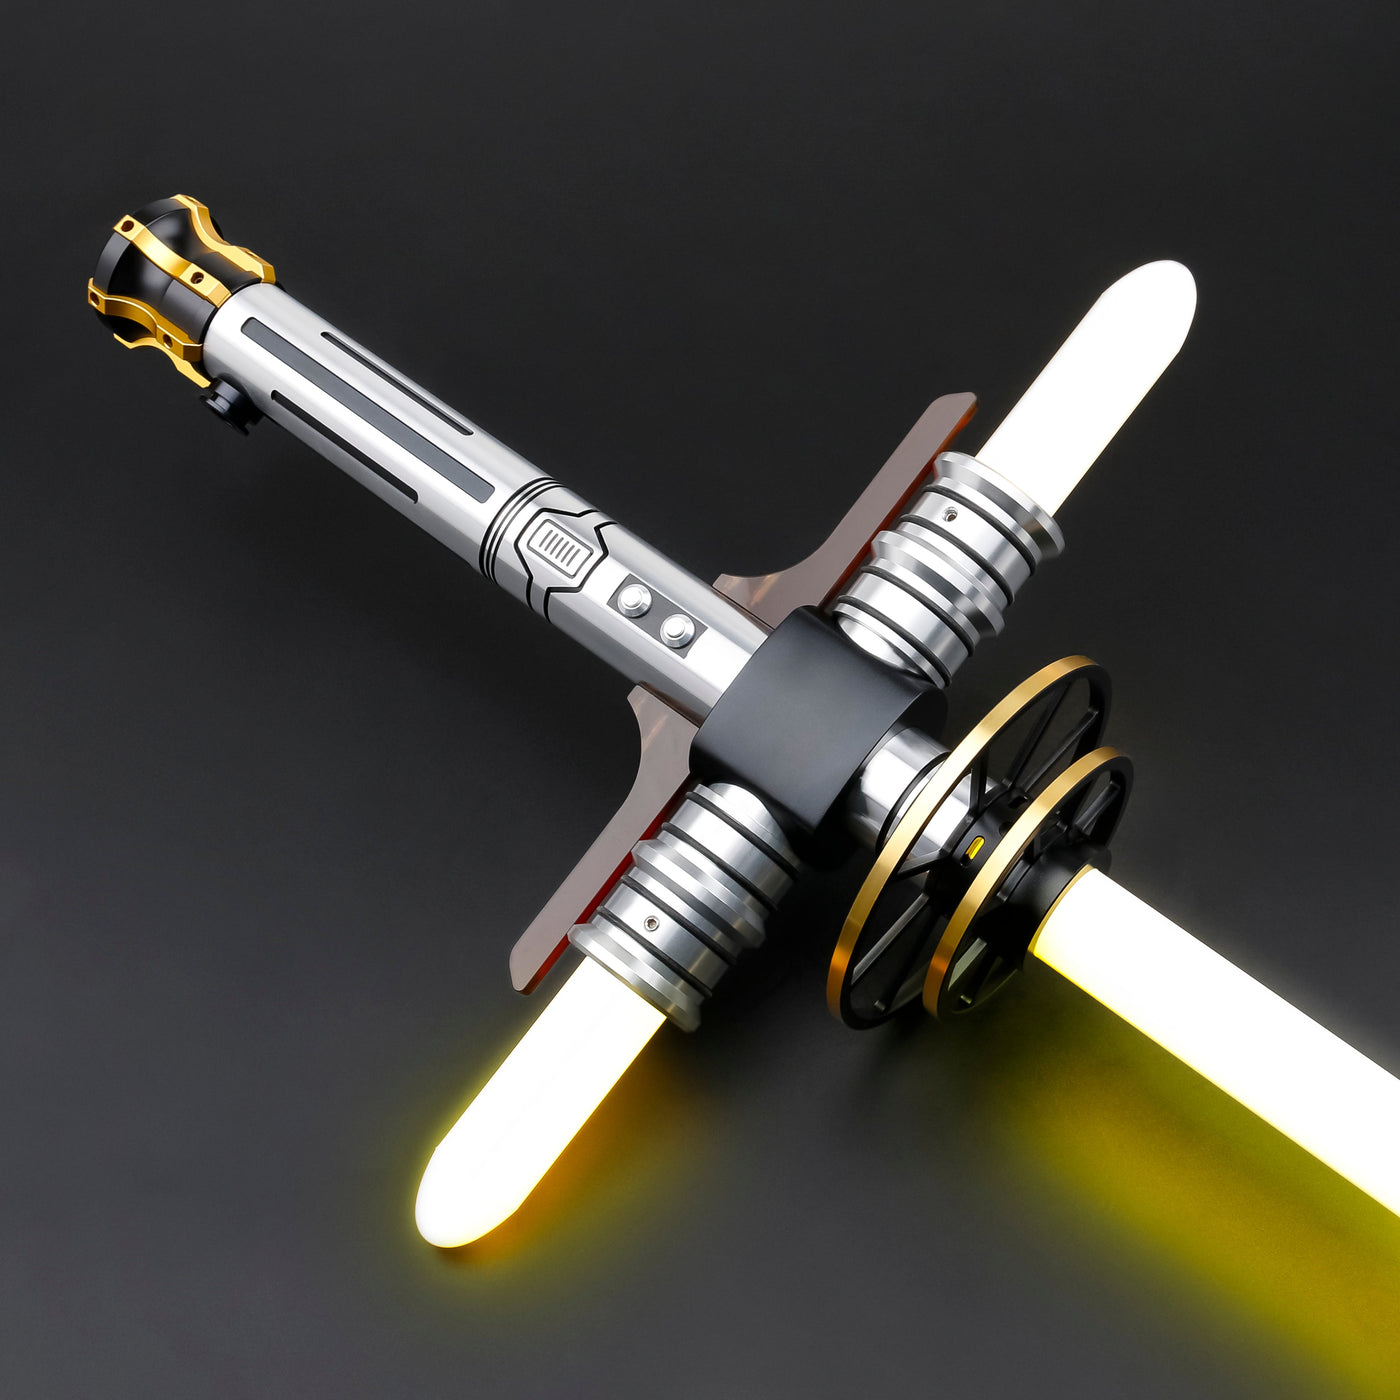 Celestial Guard Outlet - KenJo Sabers - Premium RGB Baselit - Star Wars Lightsaber replica Jedi Sith - Best sabershop Europe - Nederland light sabers kopen -